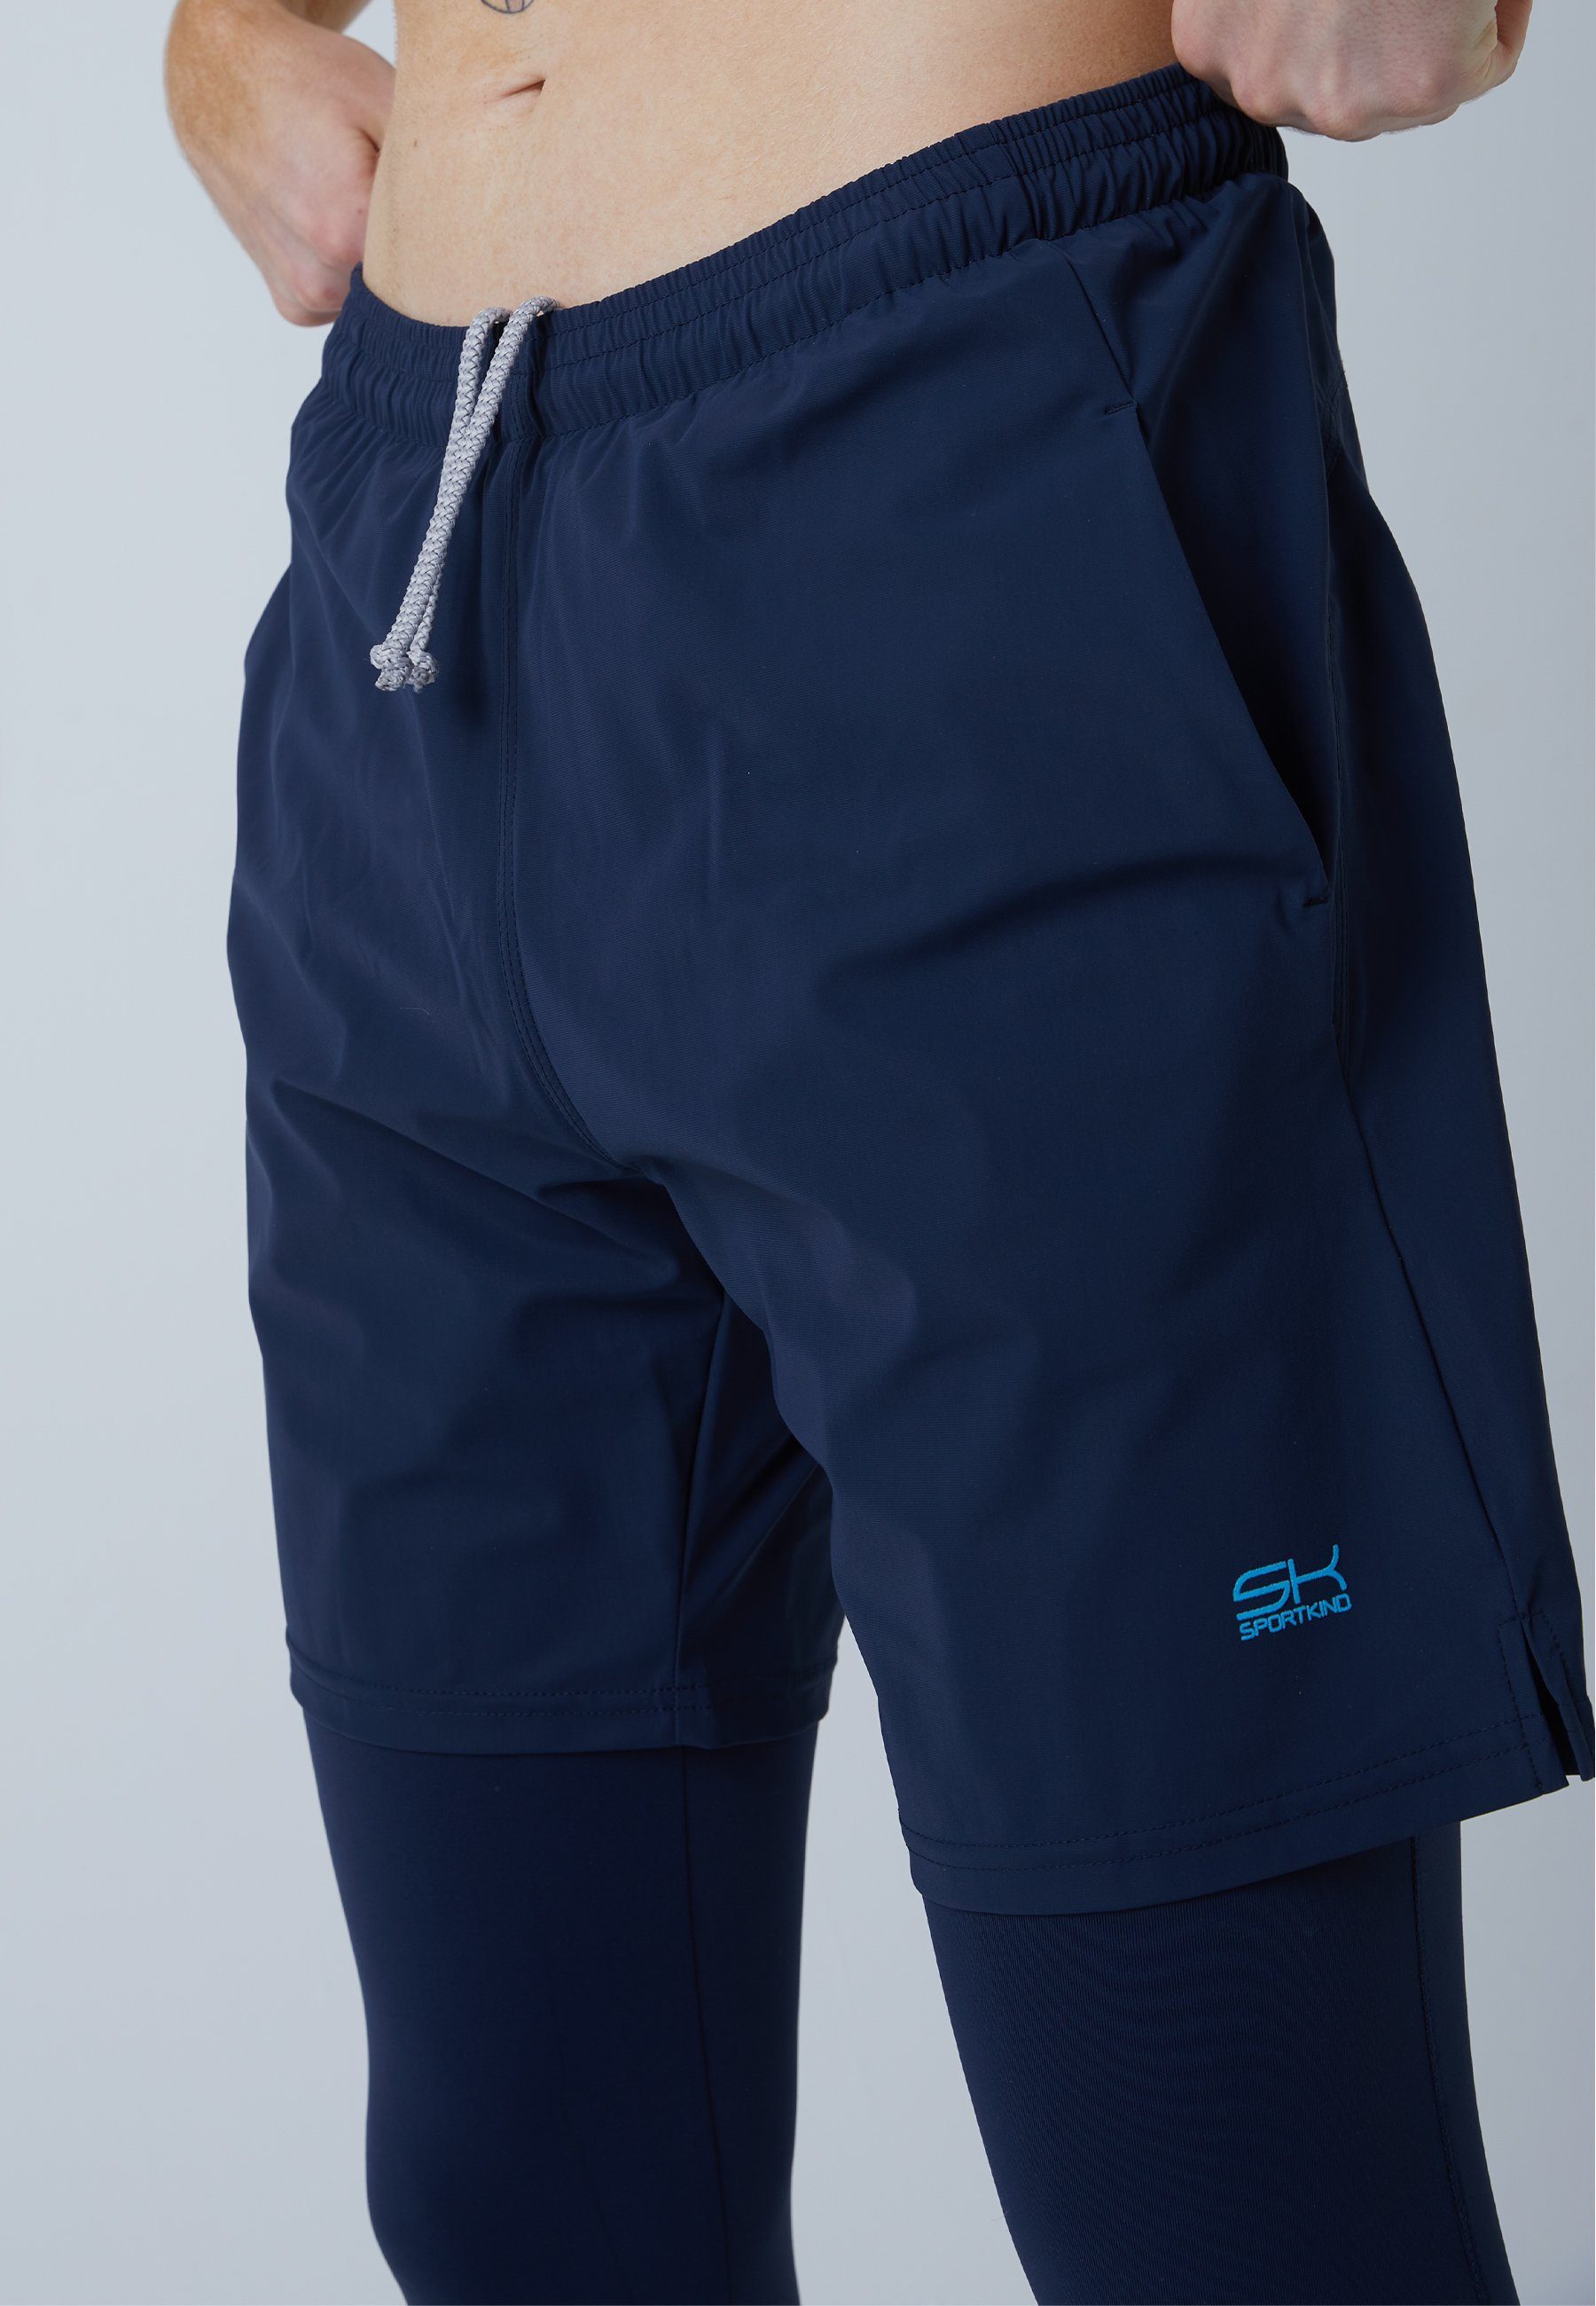 SPORTKIND Sporthose 2-in-1 Shorts mit navy Leggings Herren blau Jungen &